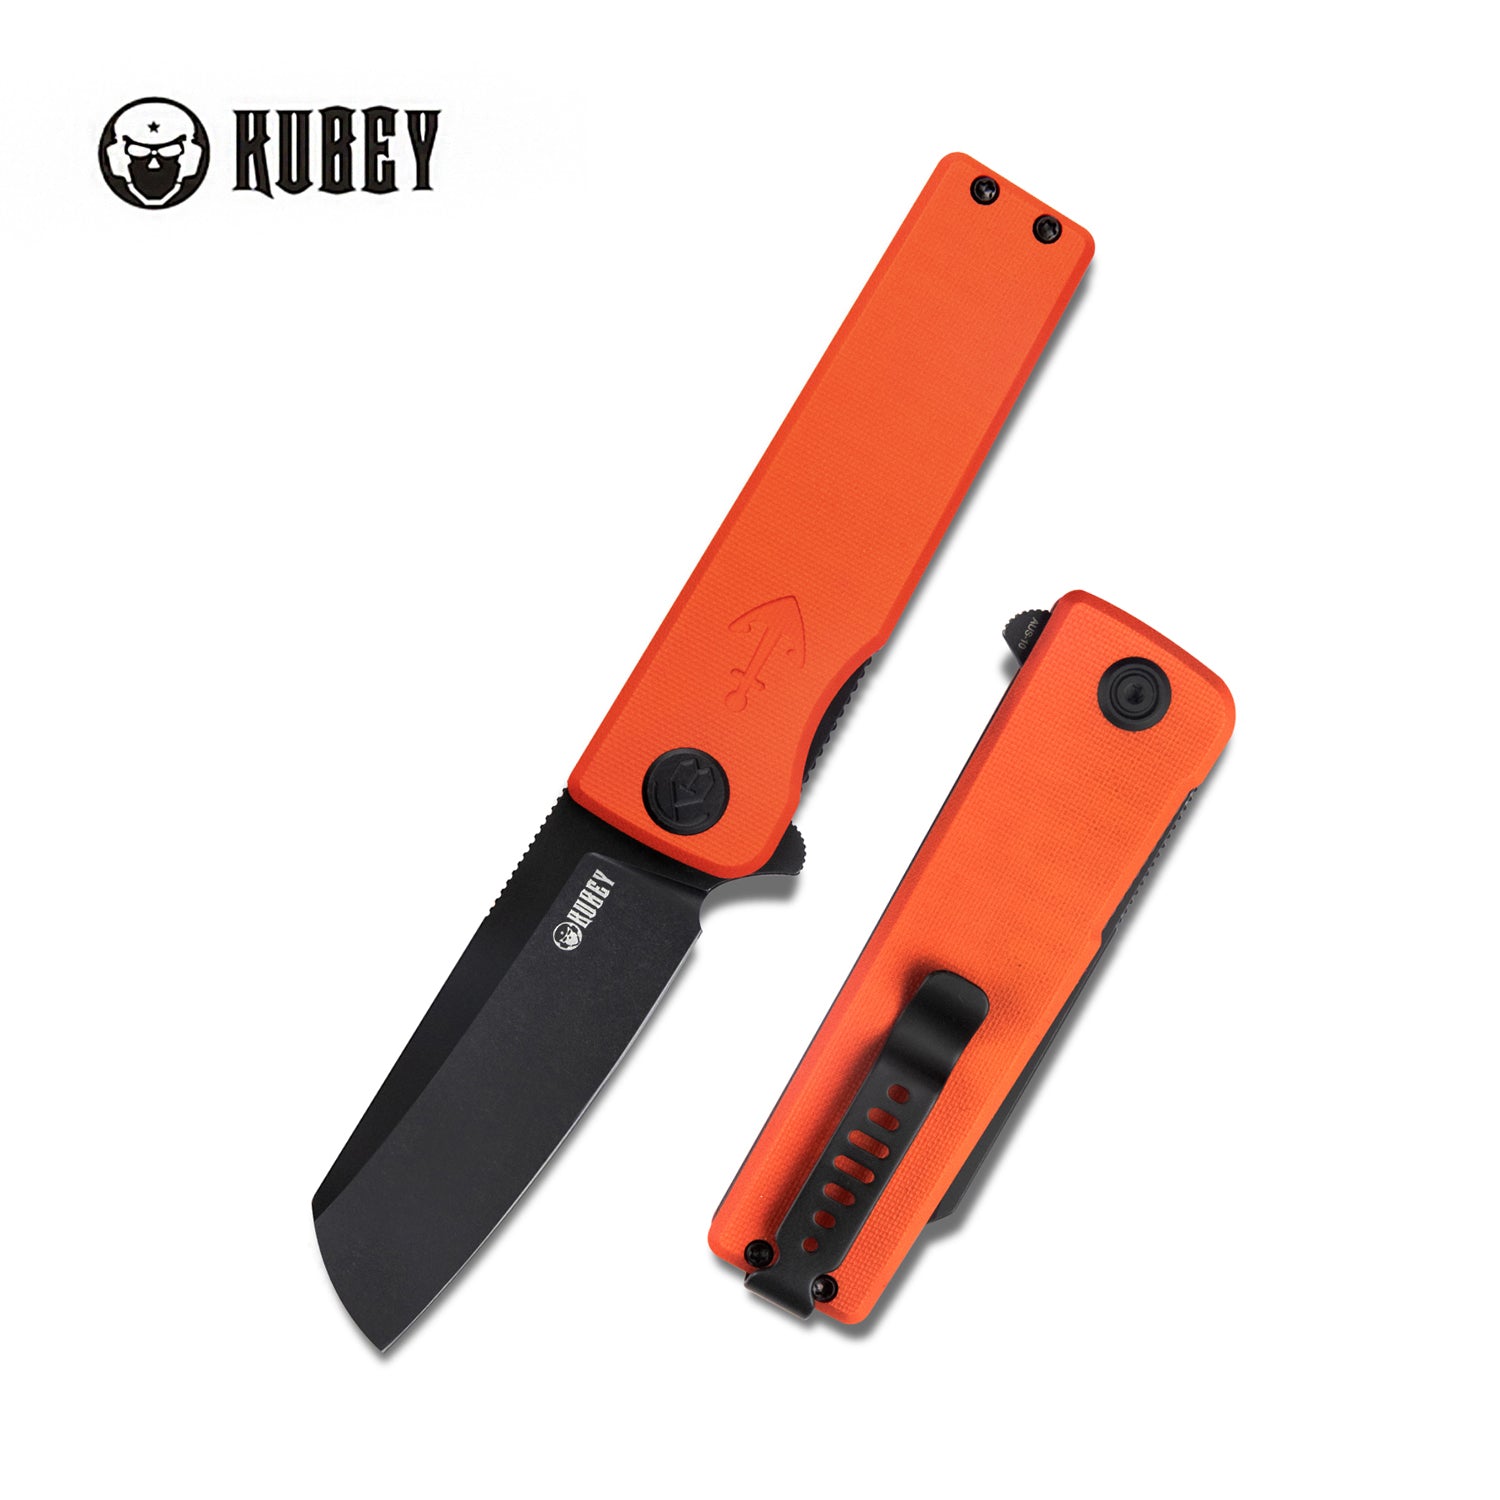 Kubey Sailor Klappmesser Liner Lock Flipper Outdoor Pocket Knife Orange G10 Handle 3.11" Blackwashed AUS-10 Blade KU317F